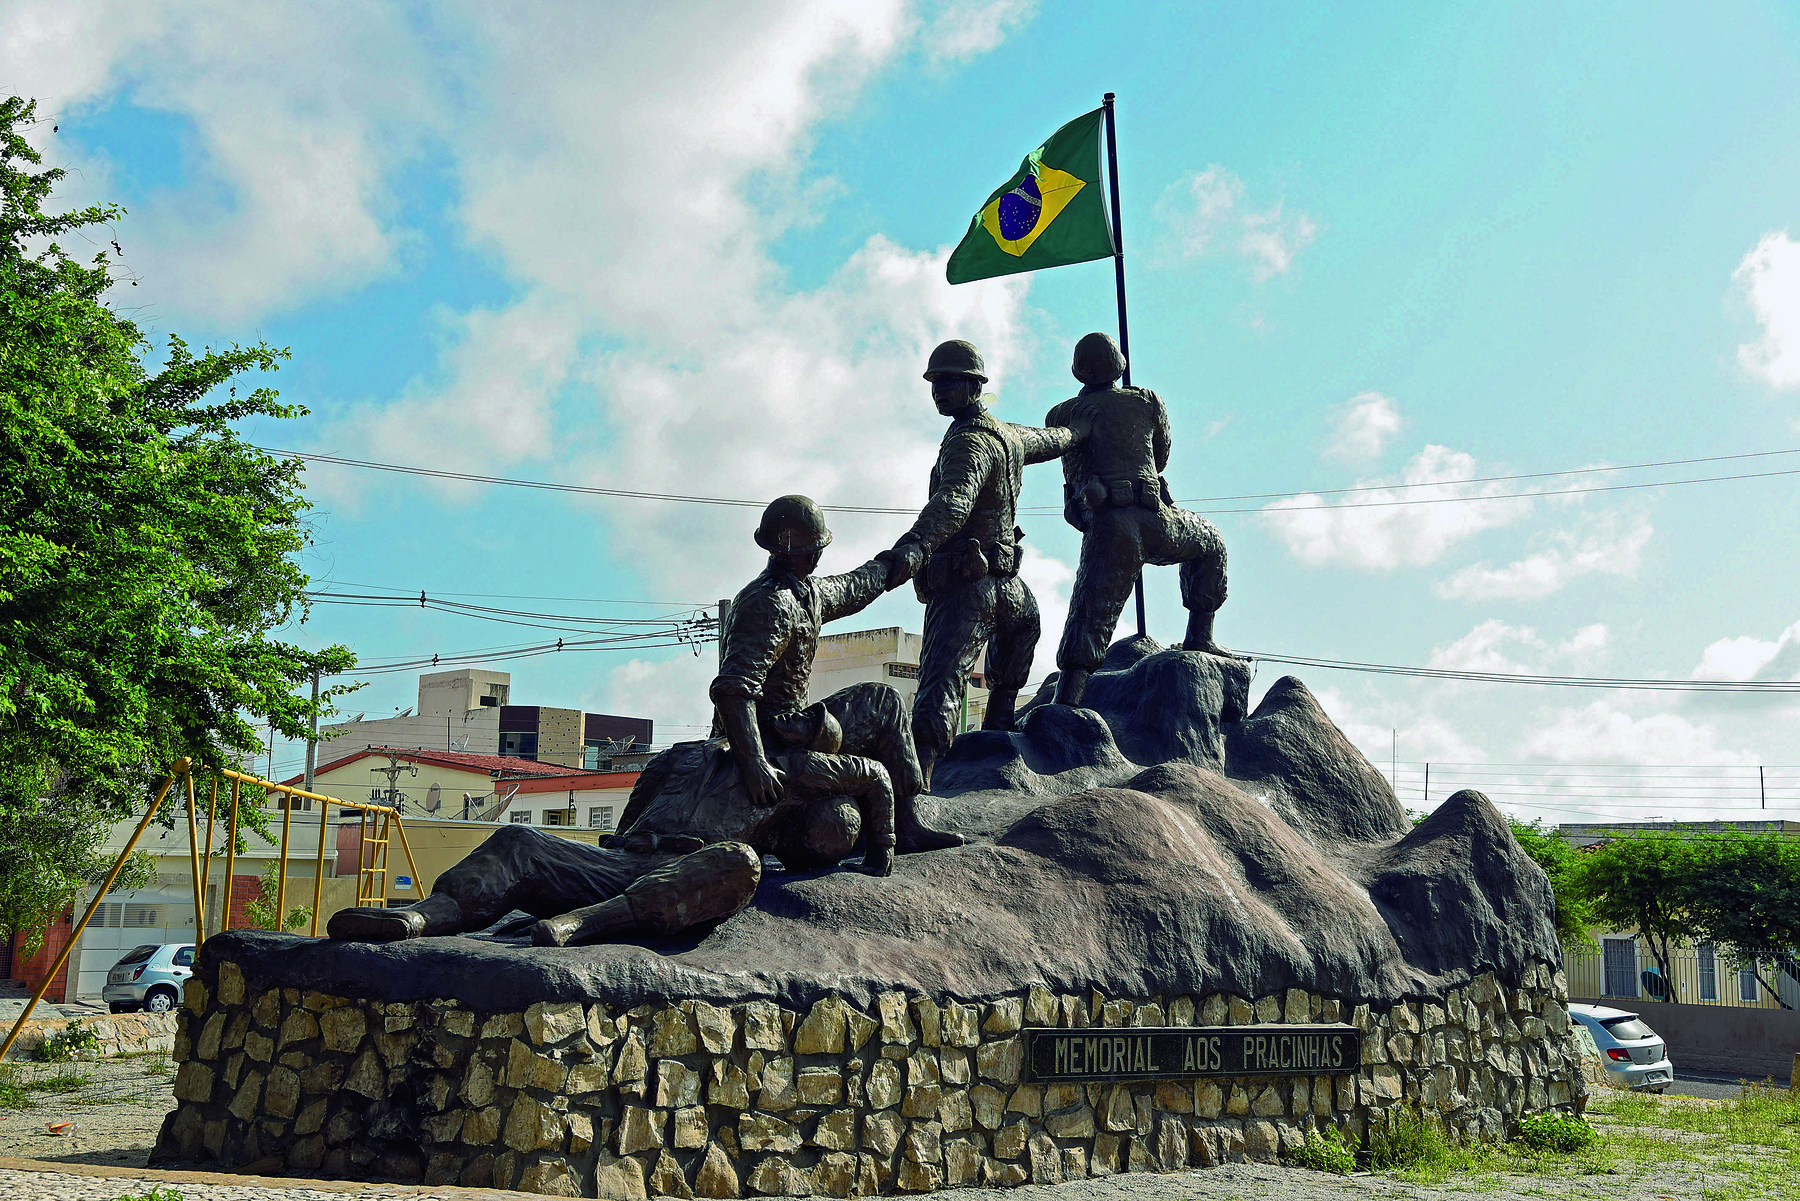 Fotografia. Destaque para um monumento cinza, representando um grupo de soldados sobre um rochedo irregular, direcionados a um mastro com a bandeira brasileira.